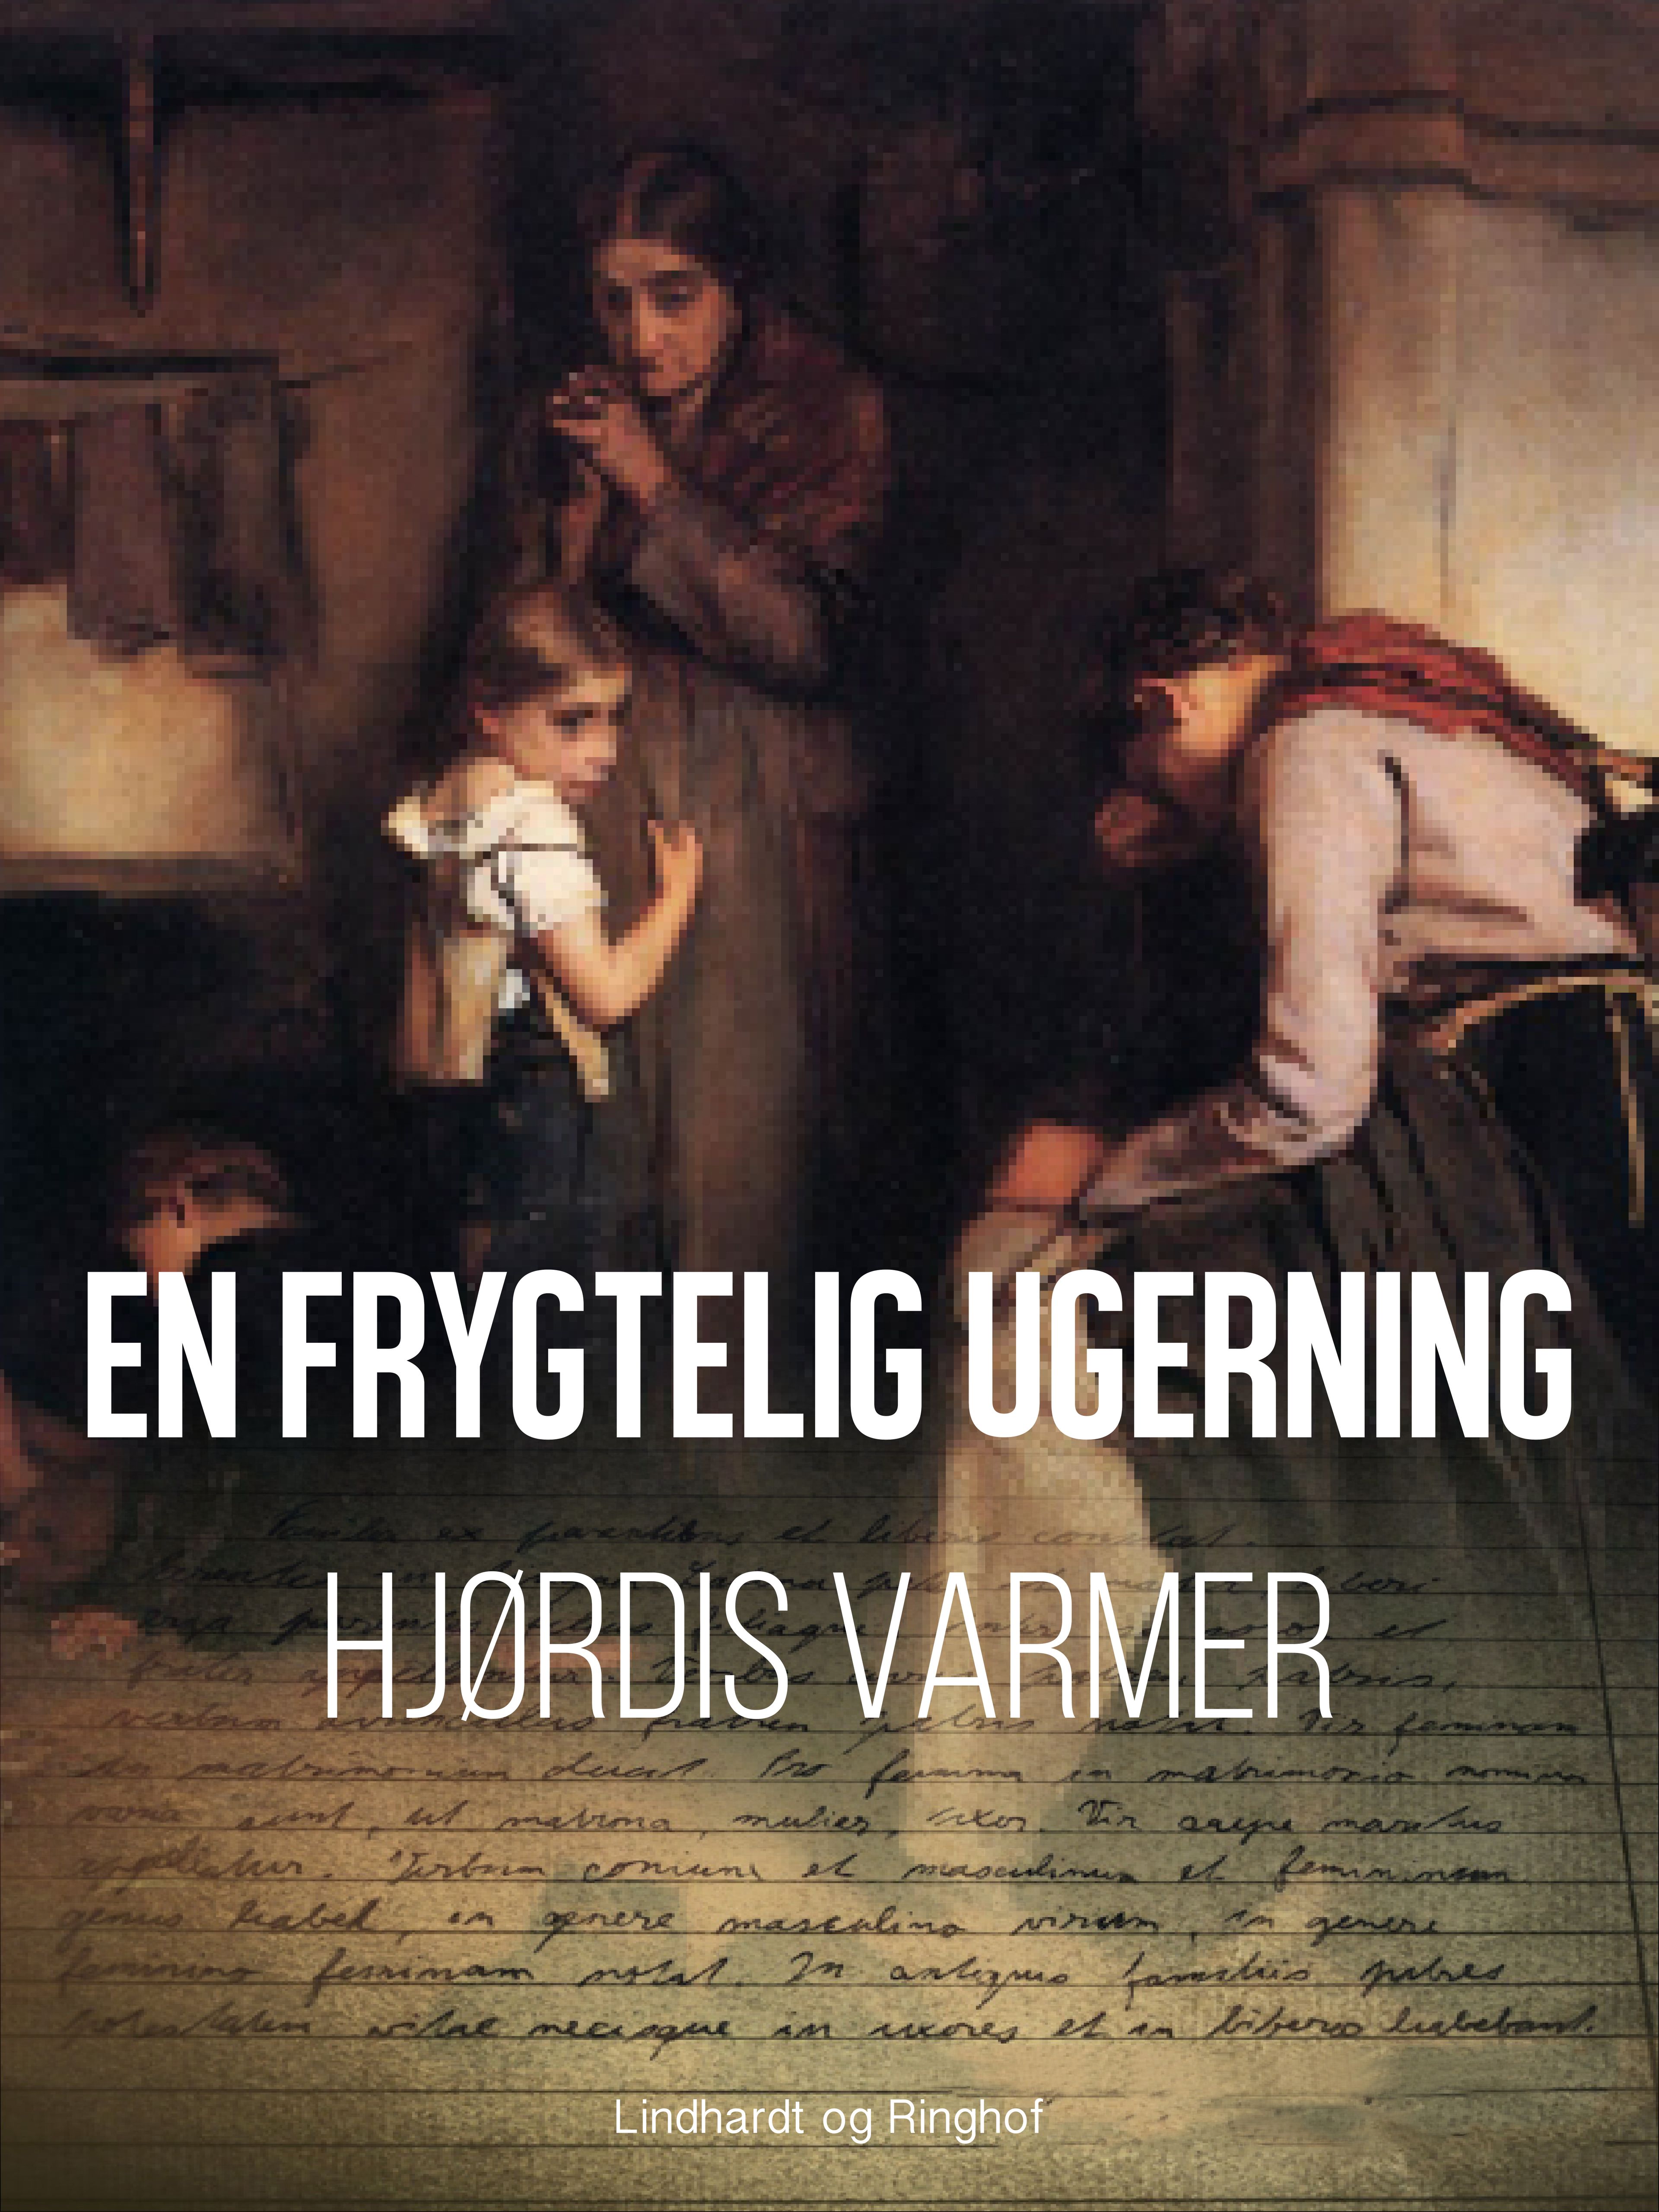 En frygtelig ugerning, audiobook by Hjørdis Varmer